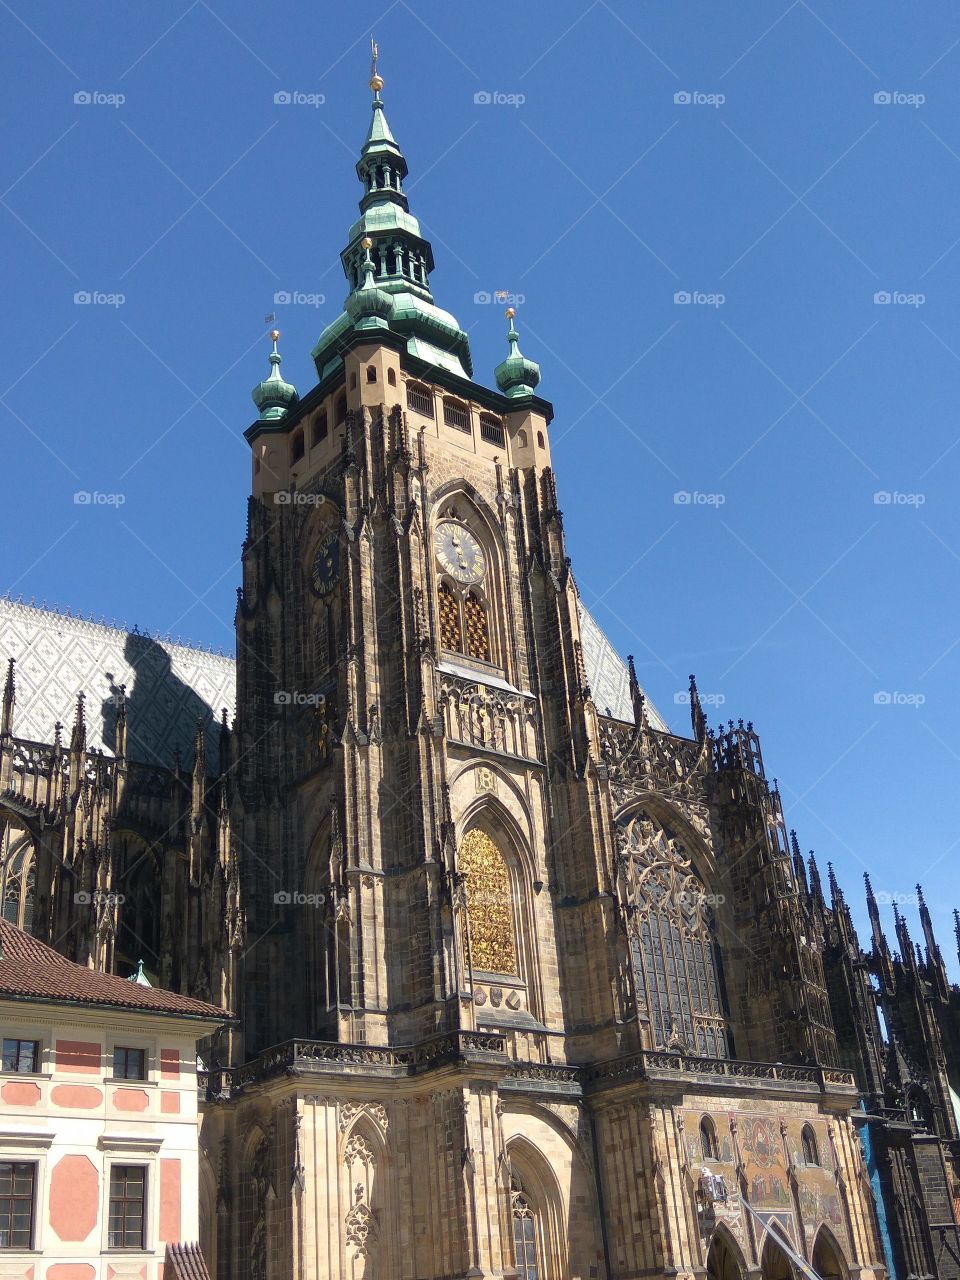 Church in Prague at sunny day.